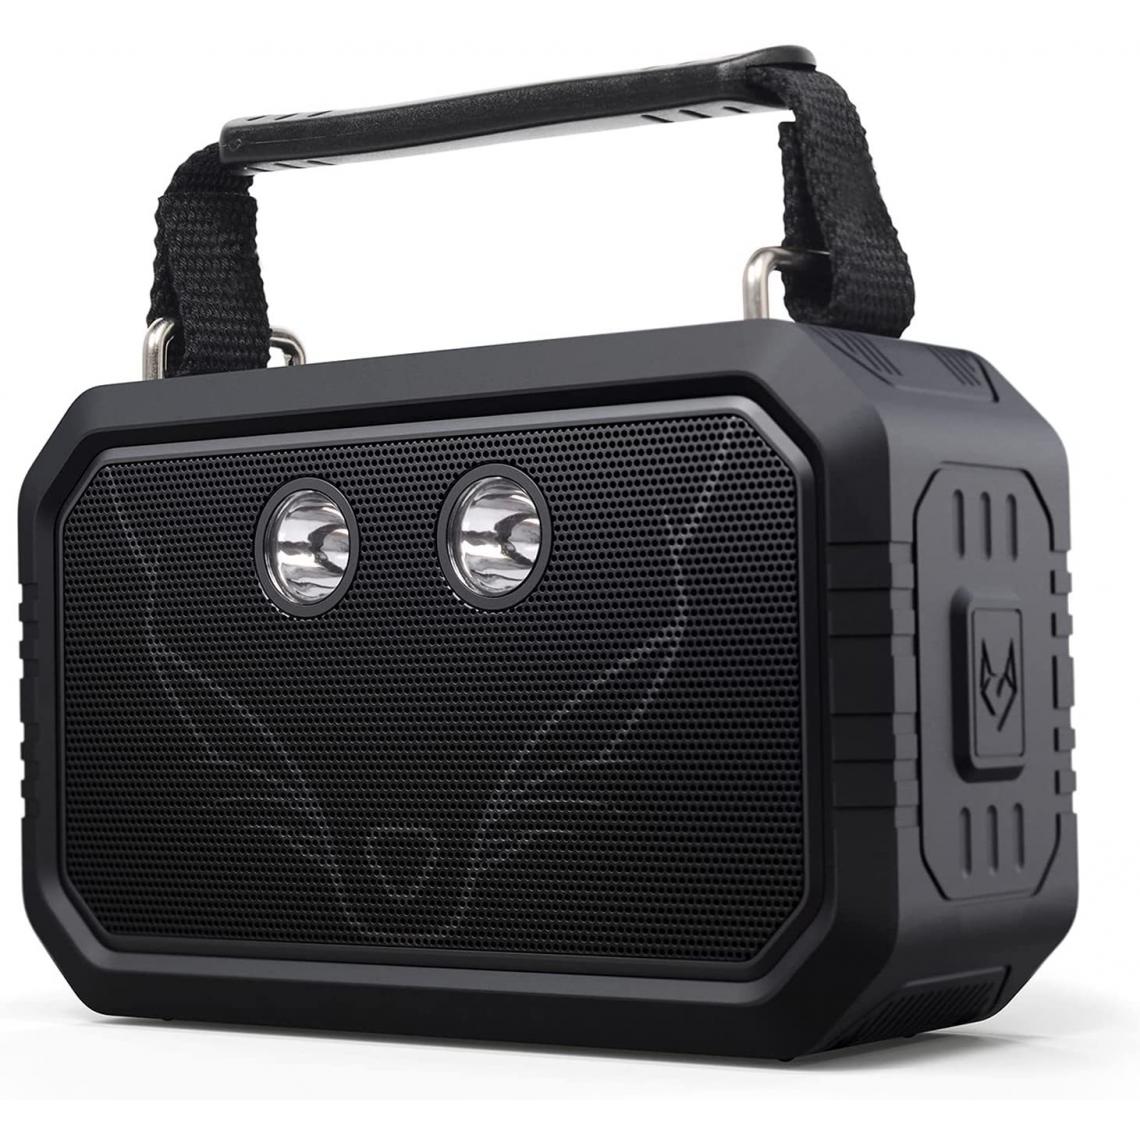 Chrono - Haut-parleur Bluetooth DOSS avec son stéréo 20 W et deux pilotes, meilleures basses, IPX6, boîtier de son sans fil étanche avec microphone, 12 heures de lecture(Noir) - Enceintes Hifi